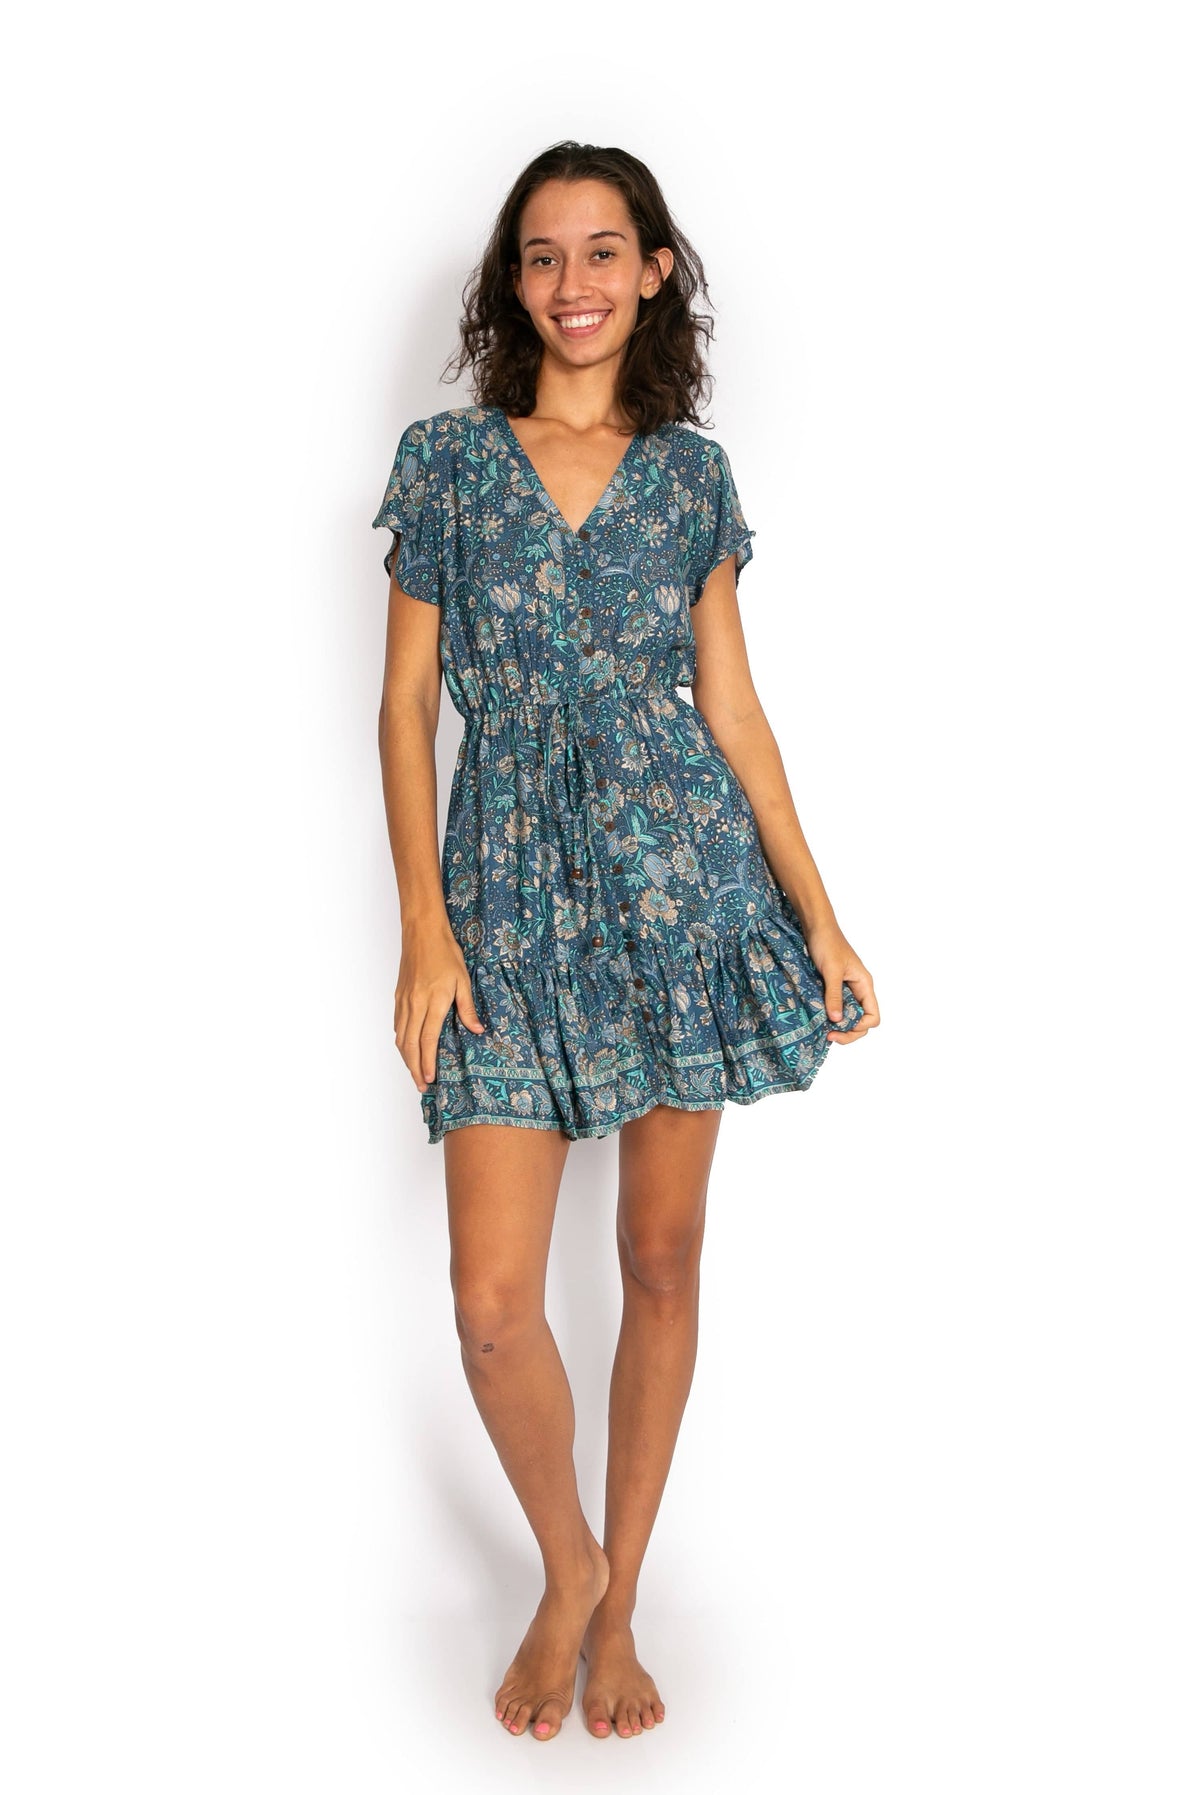 New Laure Dress - Blue Meadow* - OM Designs - Splash Swimwear  - dresses, May23, OM Designs, Womens, womens clothing - Splash Swimwear 